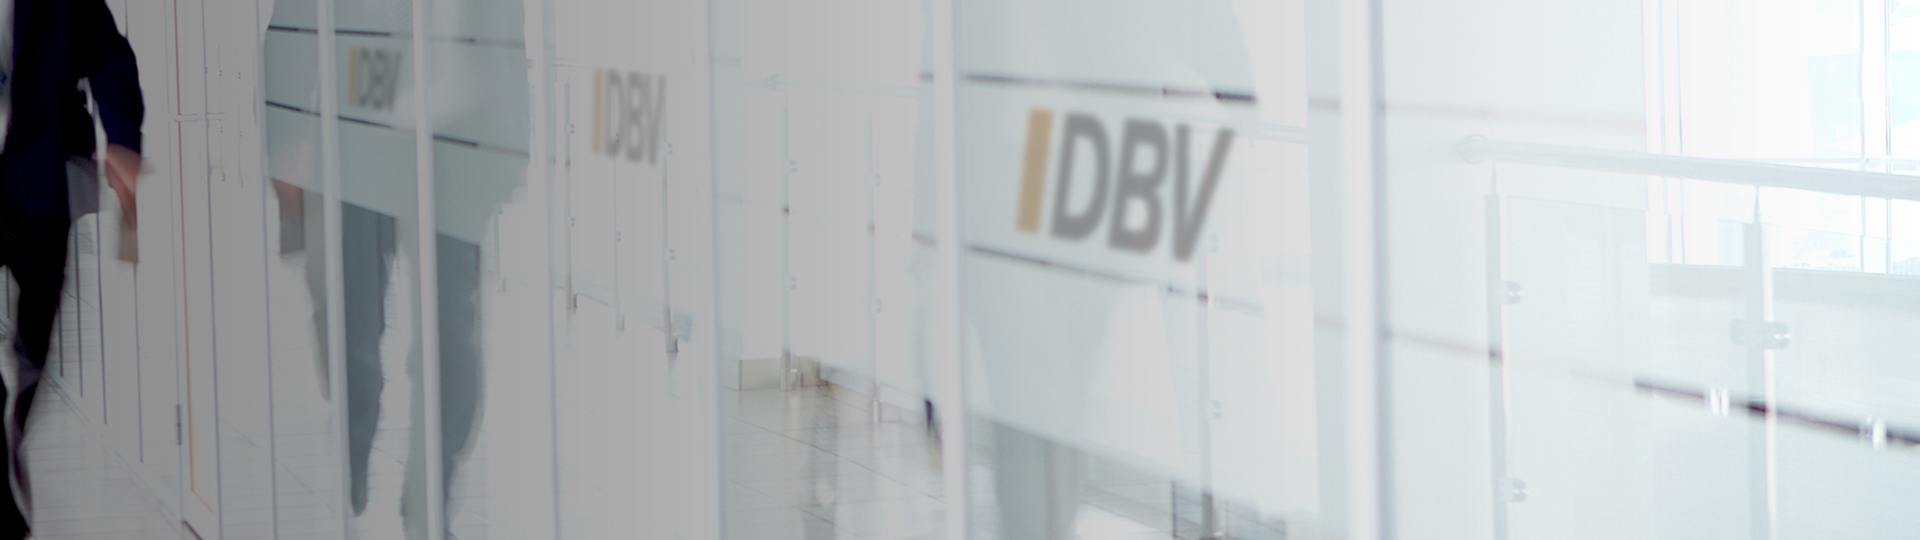 DBV Hannover Hornig & Knoch oHG | Private Krankenversicherung für Beamte